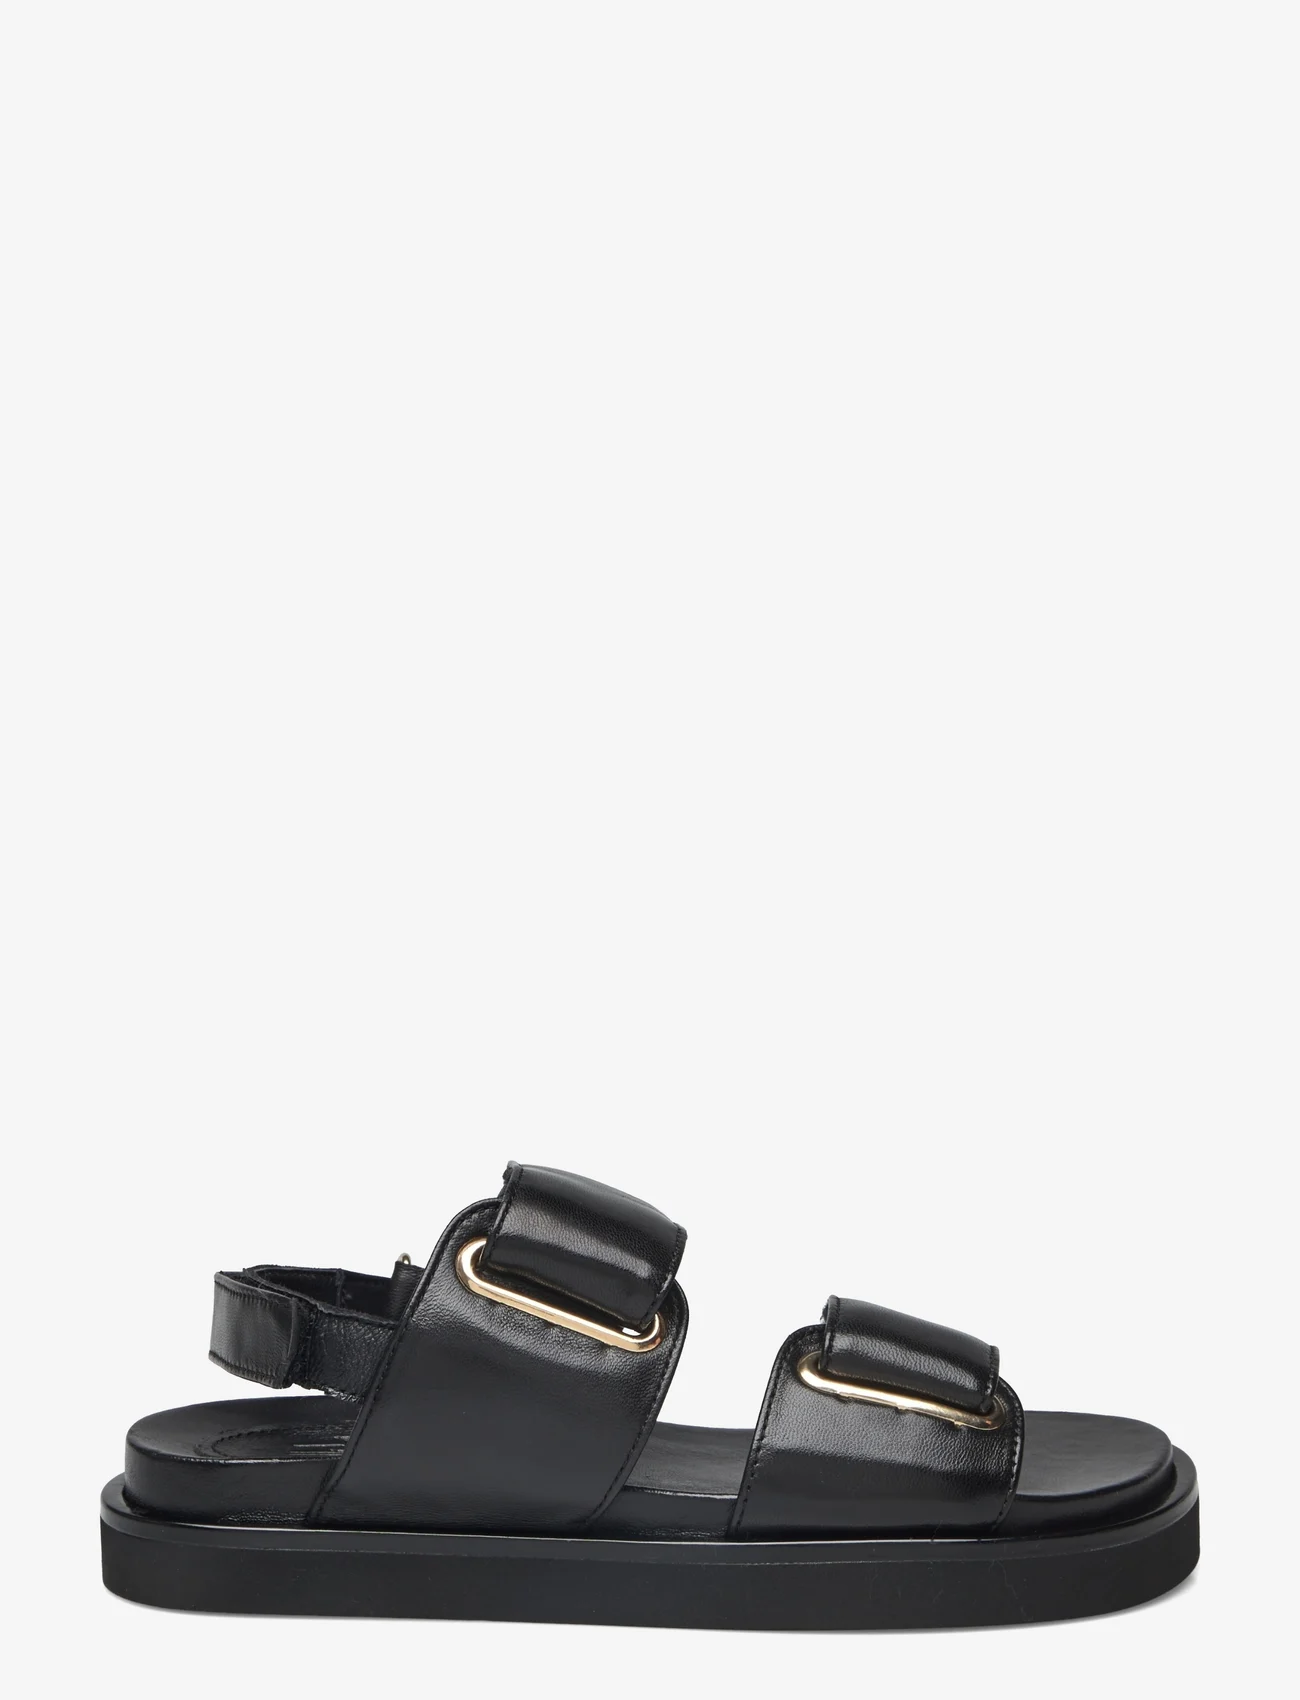 Billi Bi - Sandals - flat sandals - black nappa - 1